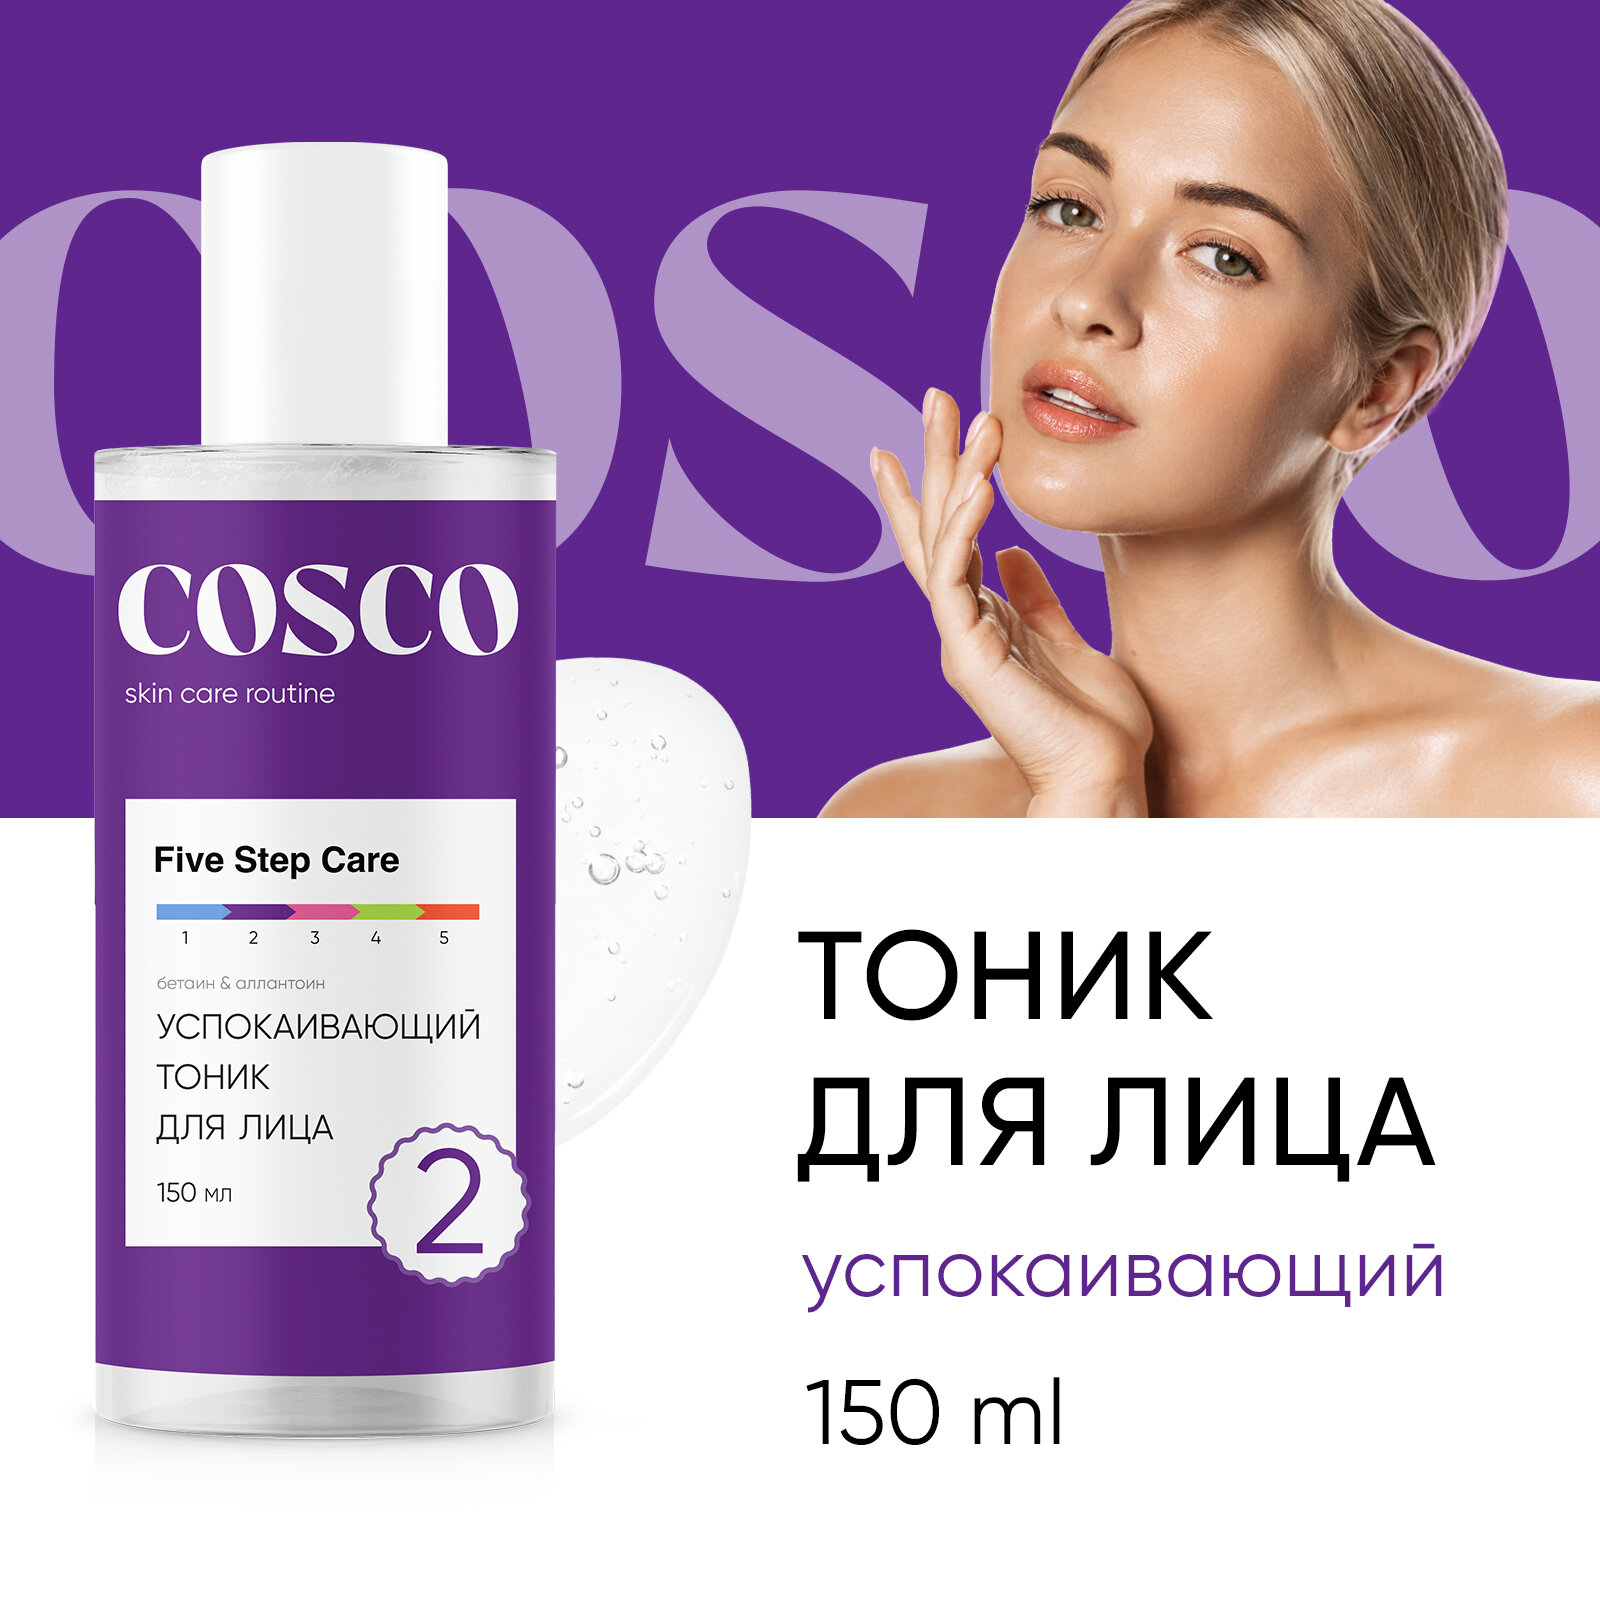 Тоник для лица Cosco успокаивающий, средство для очищения кожи с экстрактом алоэ, 150 мл